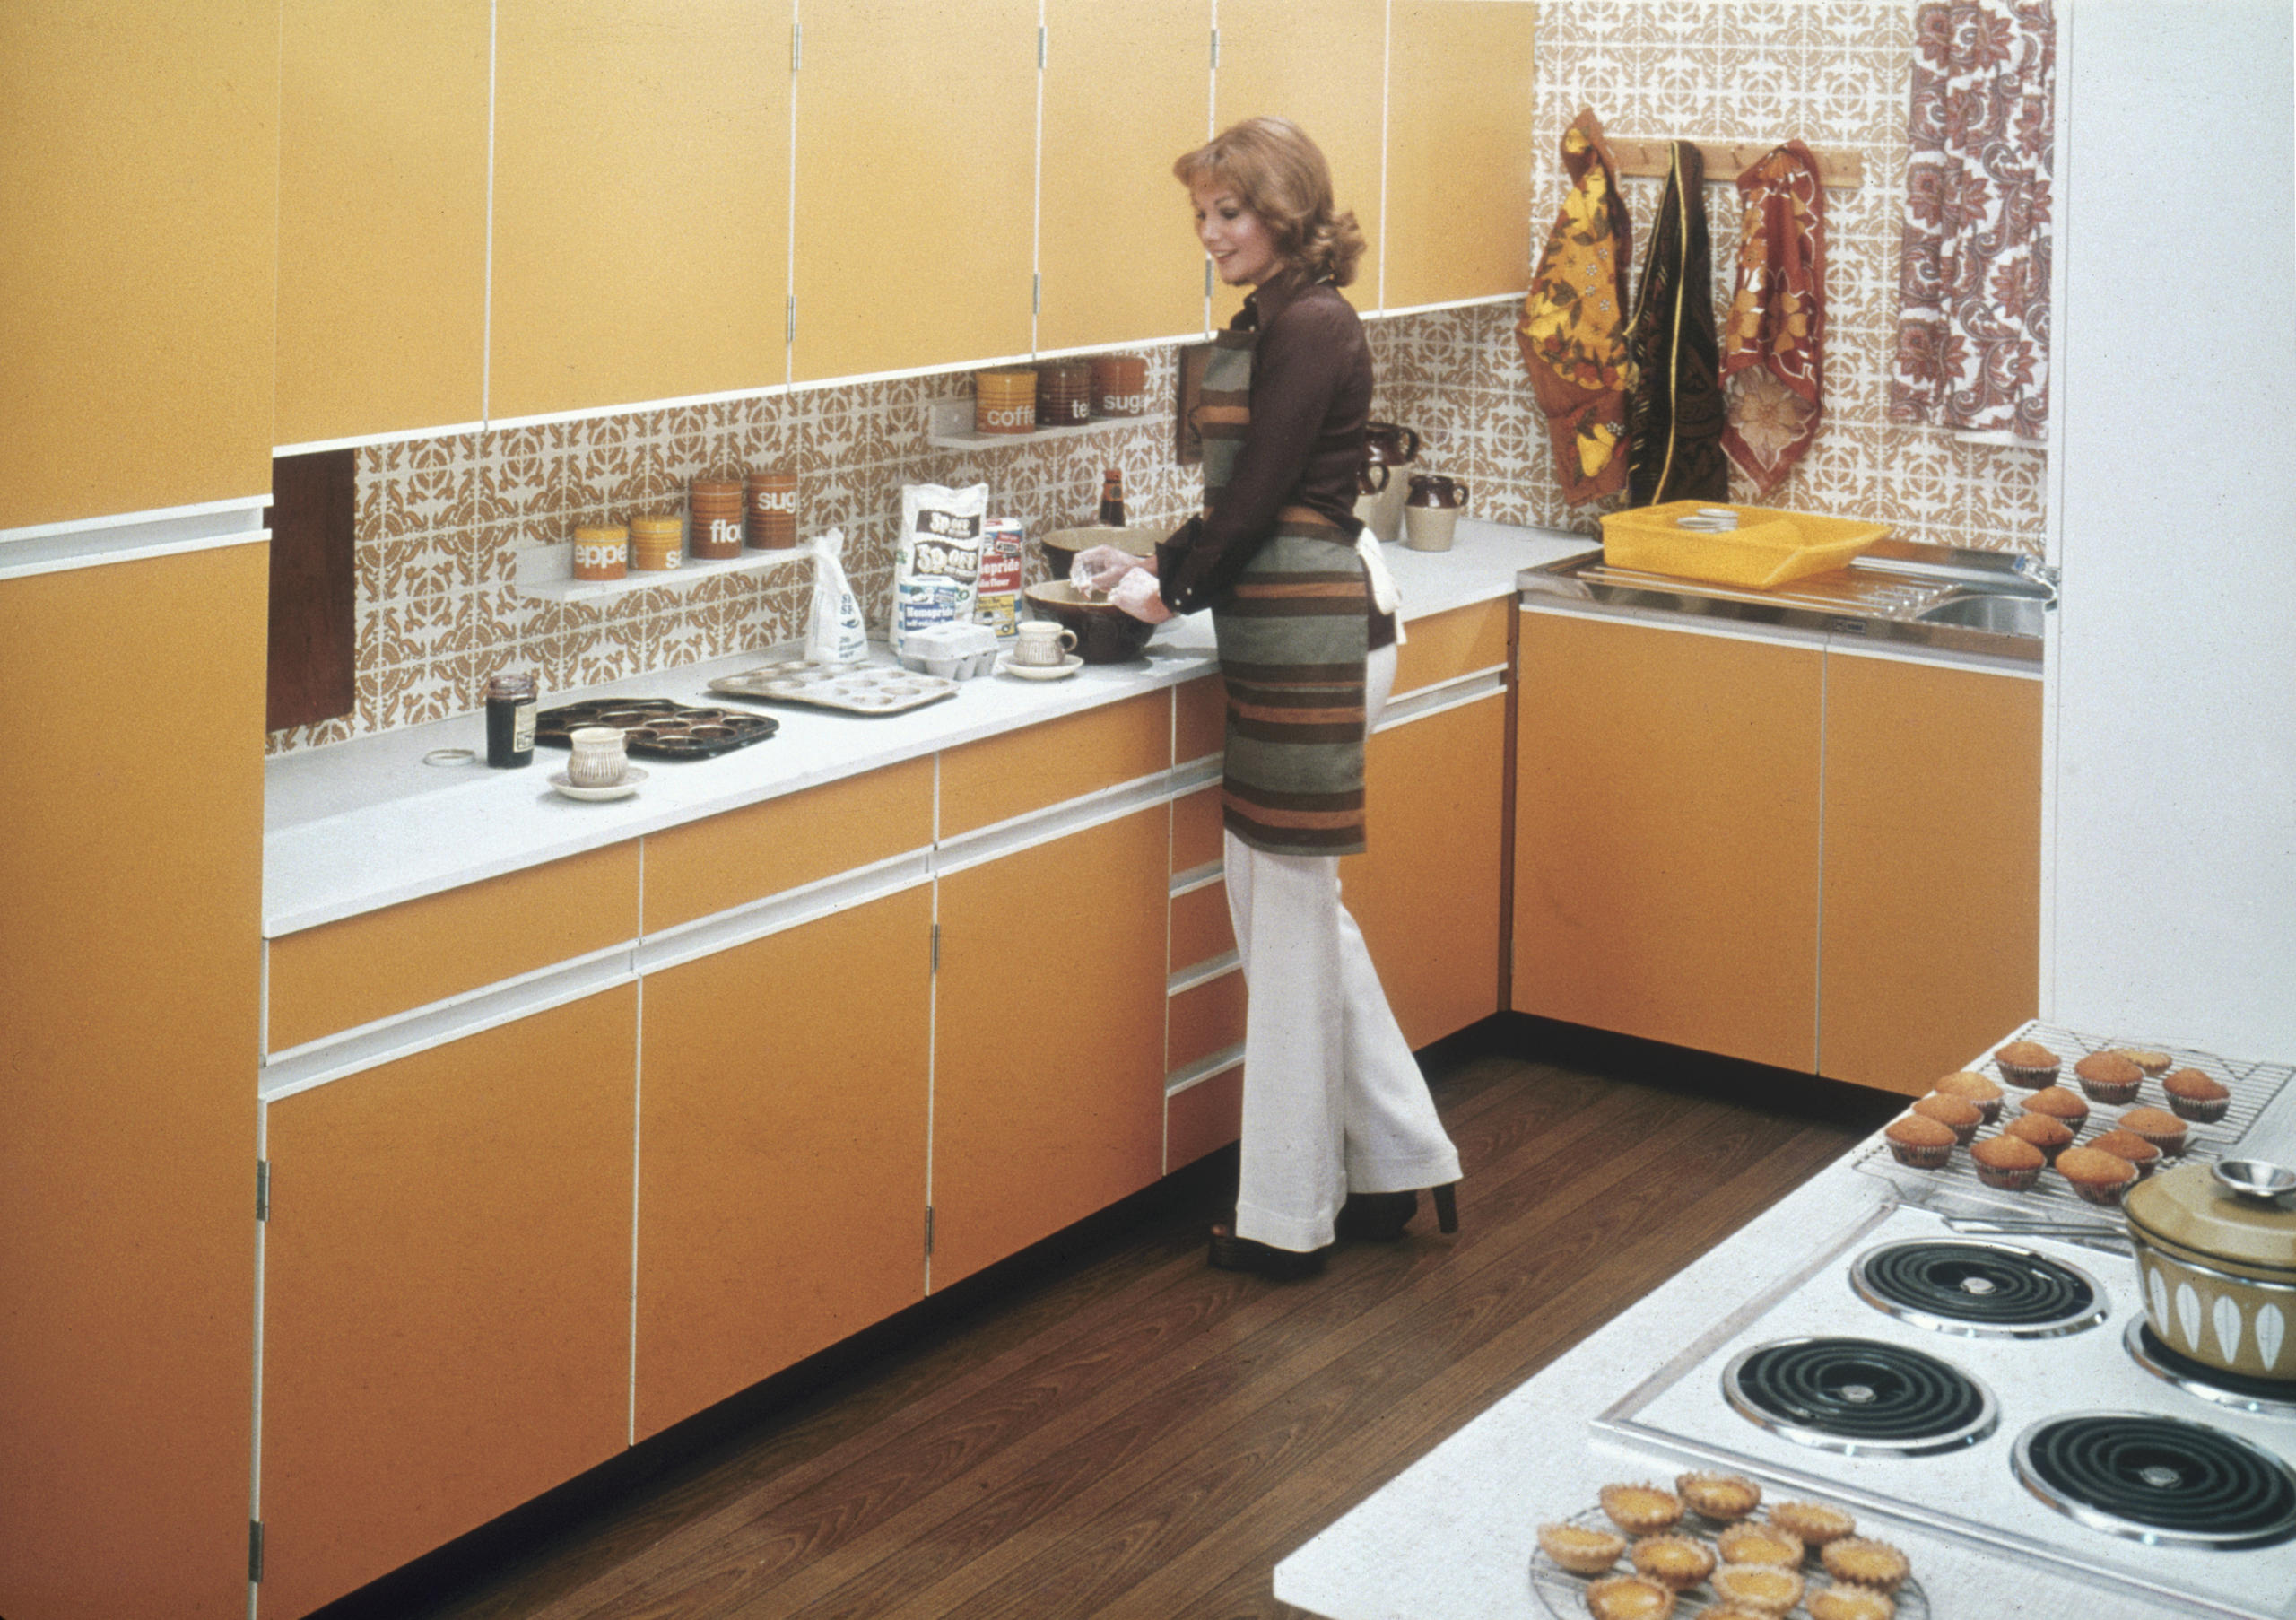 المطبخ المعاصر في بداية السبعينات